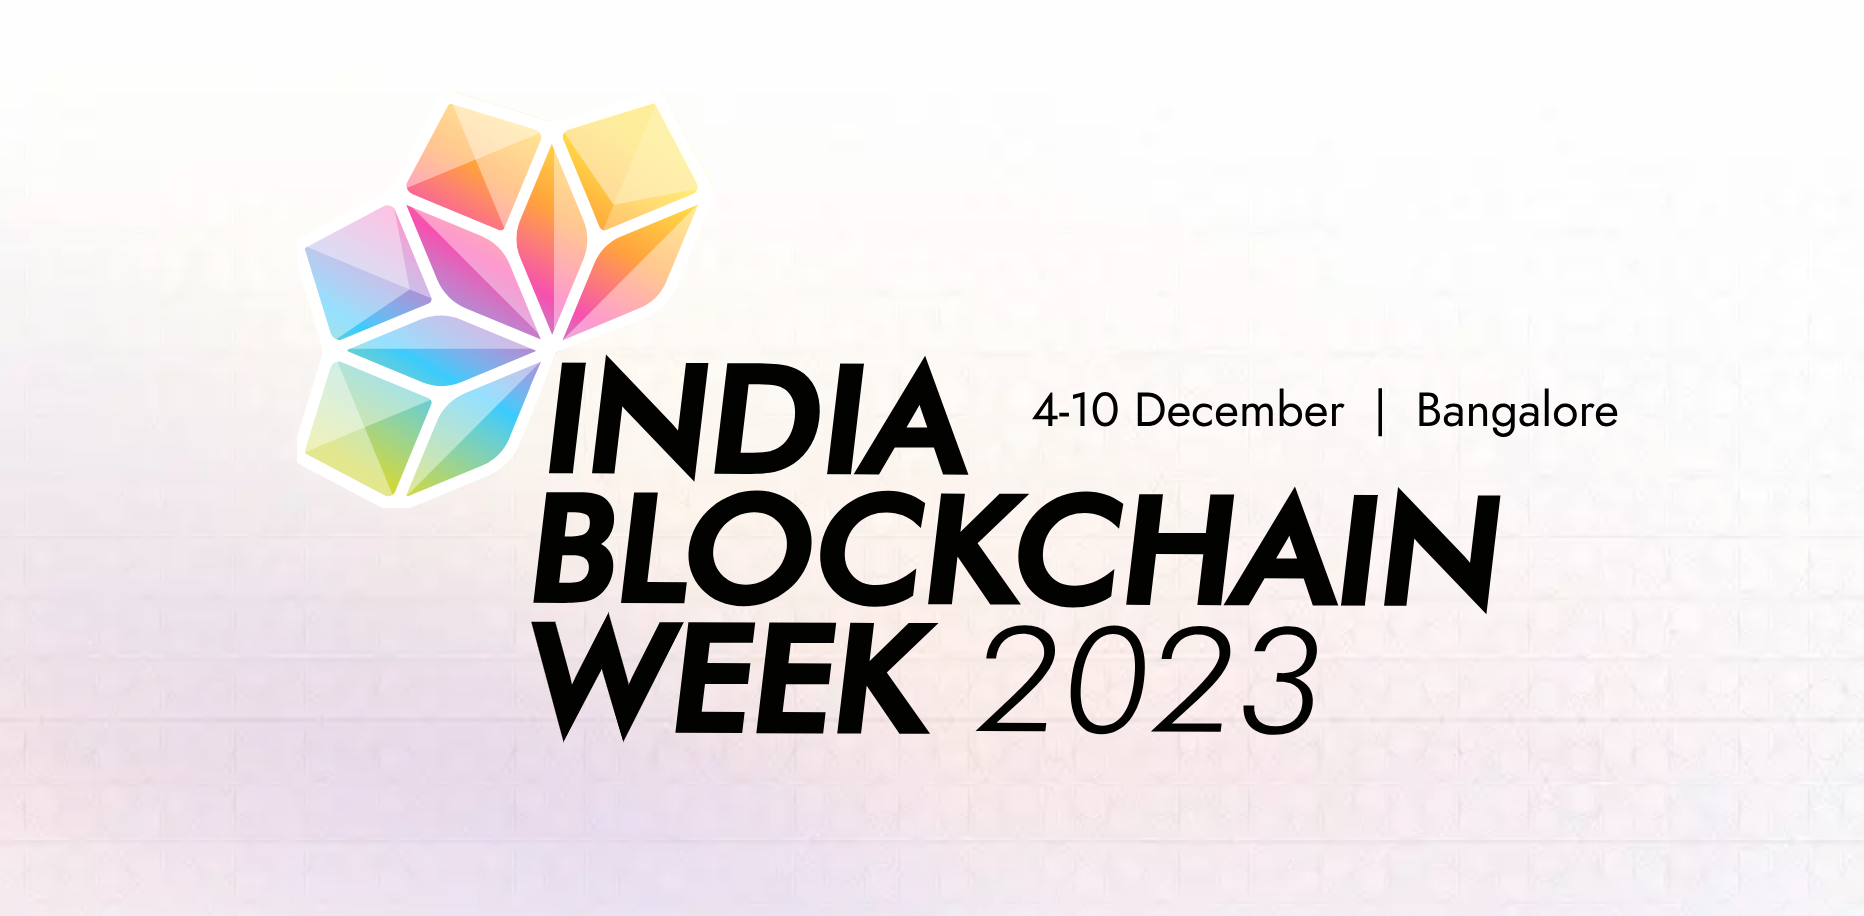 Tuần lễ Blockchain Ấn Độ 2023: Ra mắt đội hình năng động cho Hội nghị hàng đầu